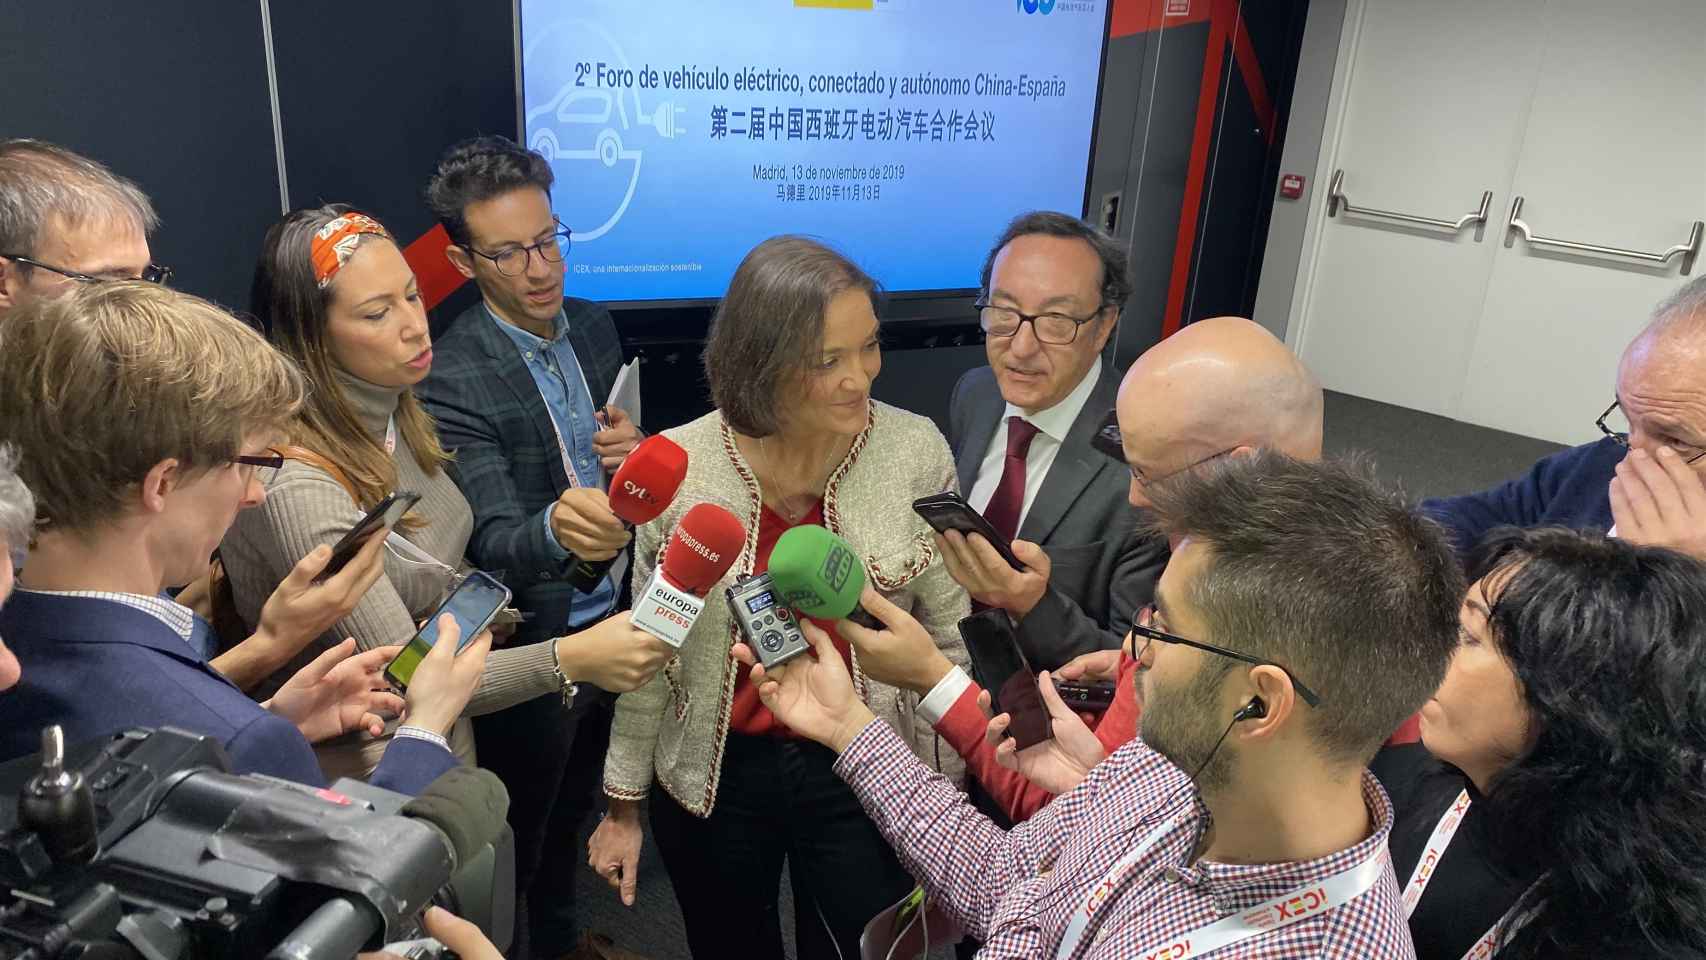 Reyes Maroto, ministra de Industria, Comercio y Turismo en funciones, atiende a los medios tras el 2º Foro de vehículo eléctrico, conectado y autónomo China-España.